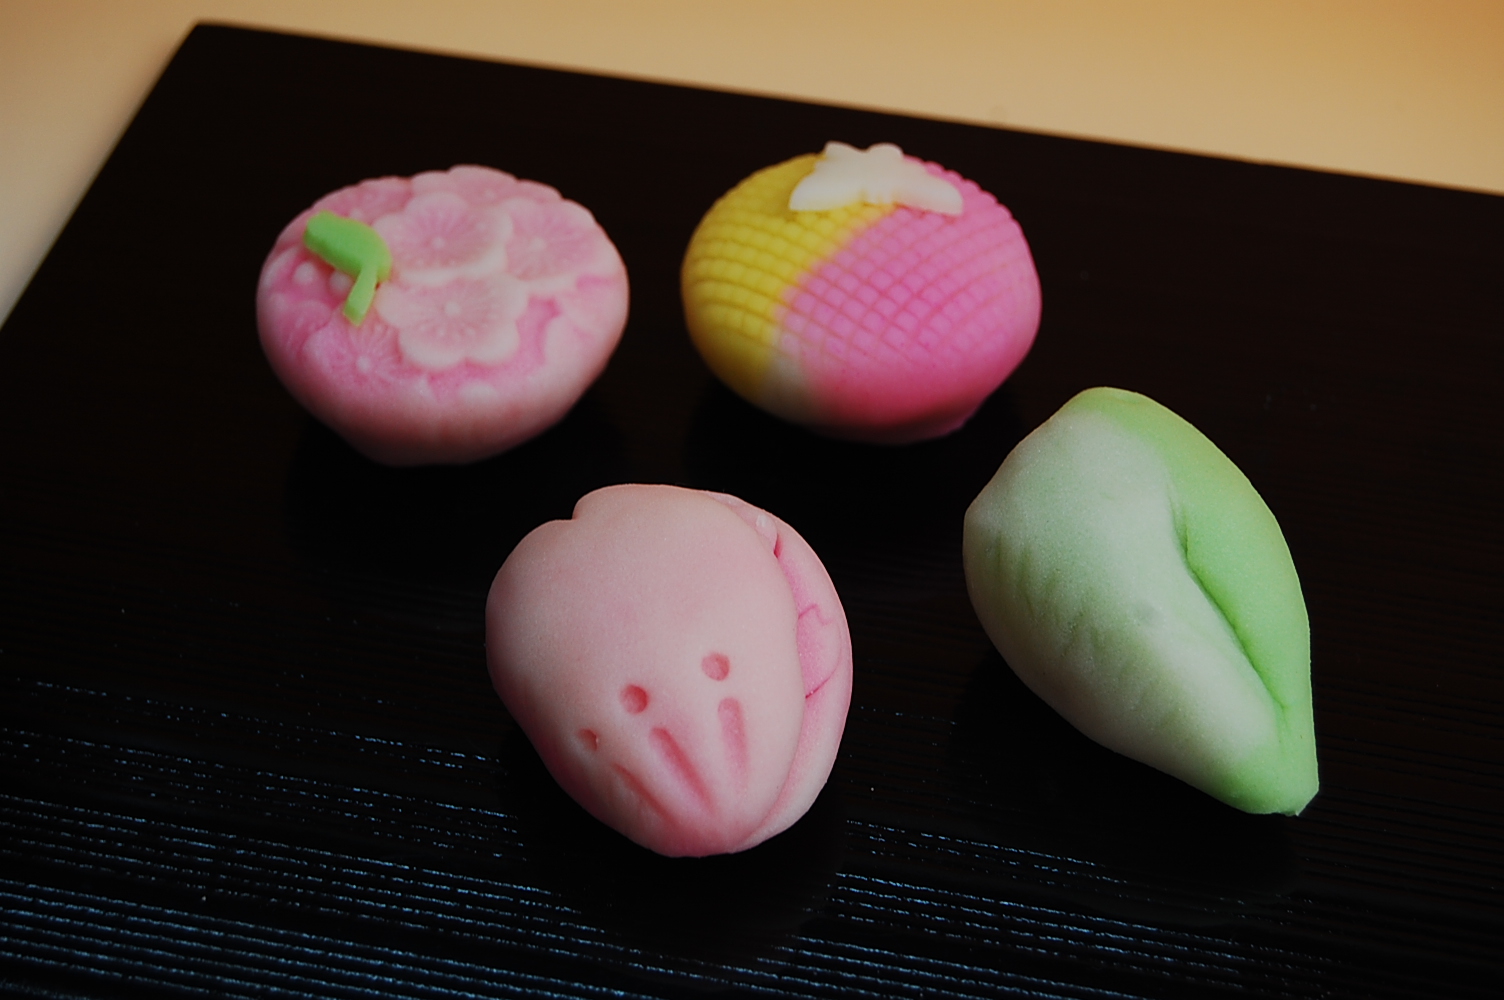 Chuwado Confectionery